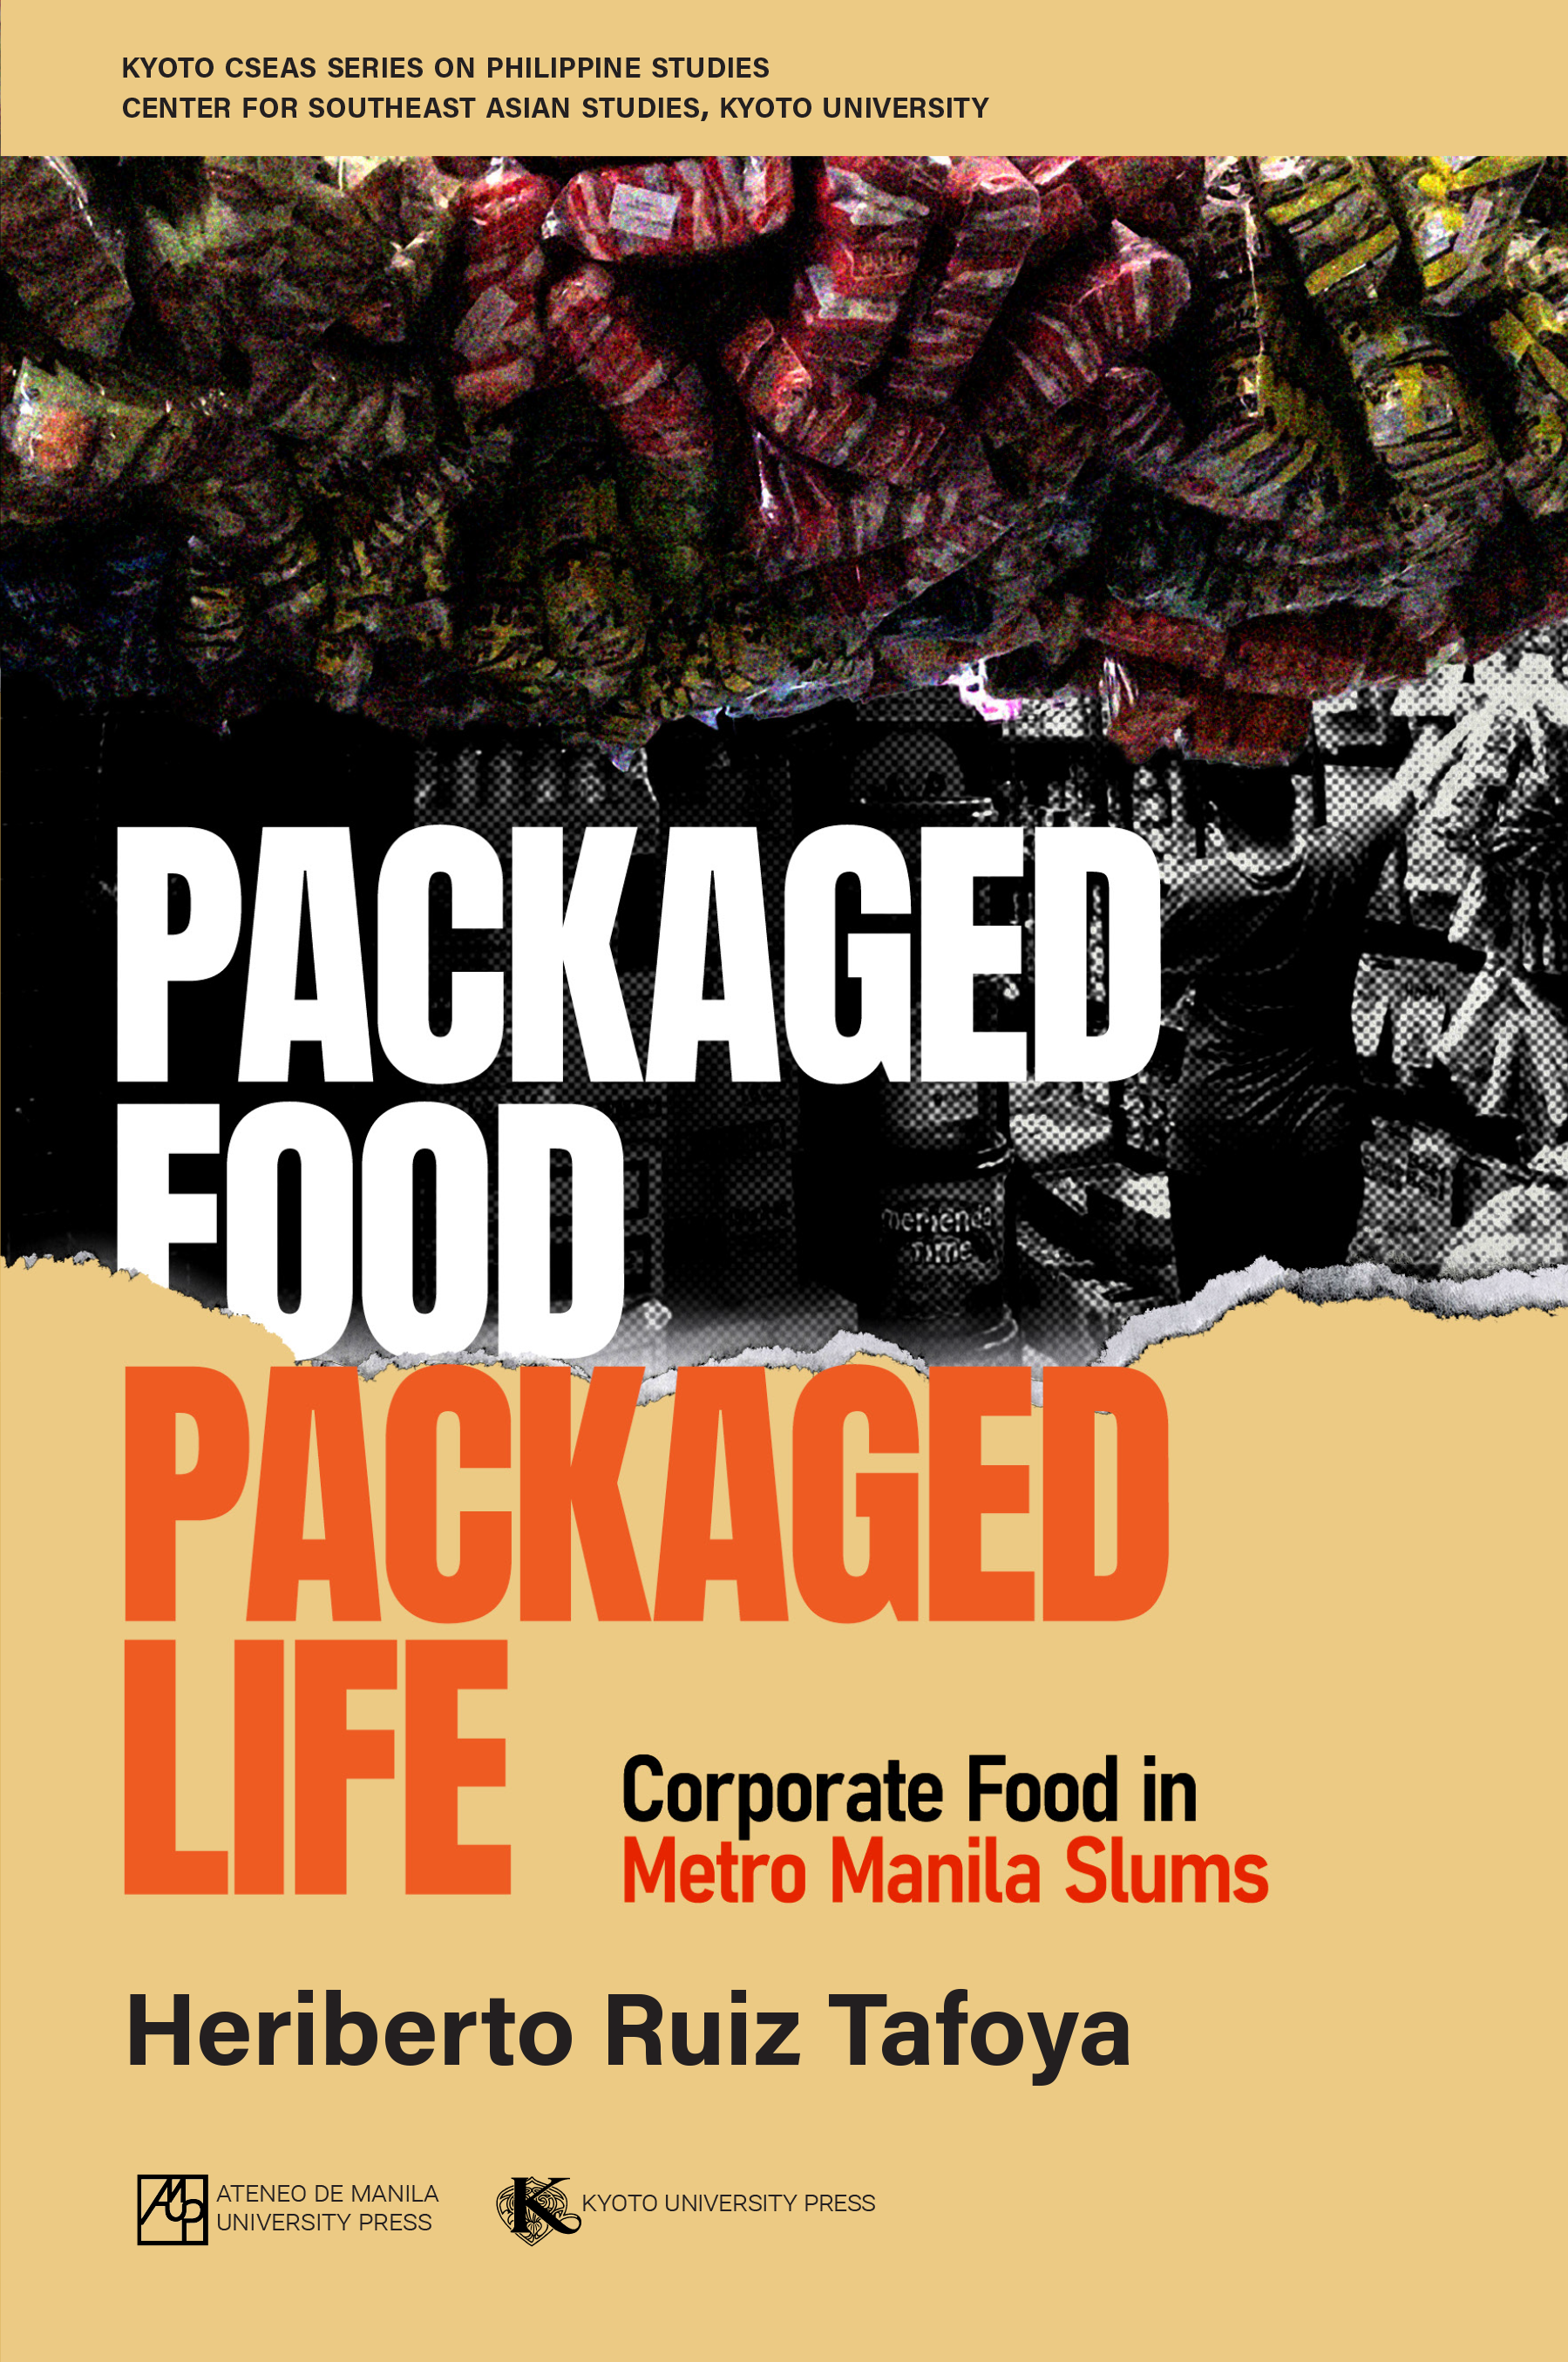 Book of  Packaged Food, Packaged Life: Corporate Food in Metro Manila Slums by Heriberto Ruiz Tafoya